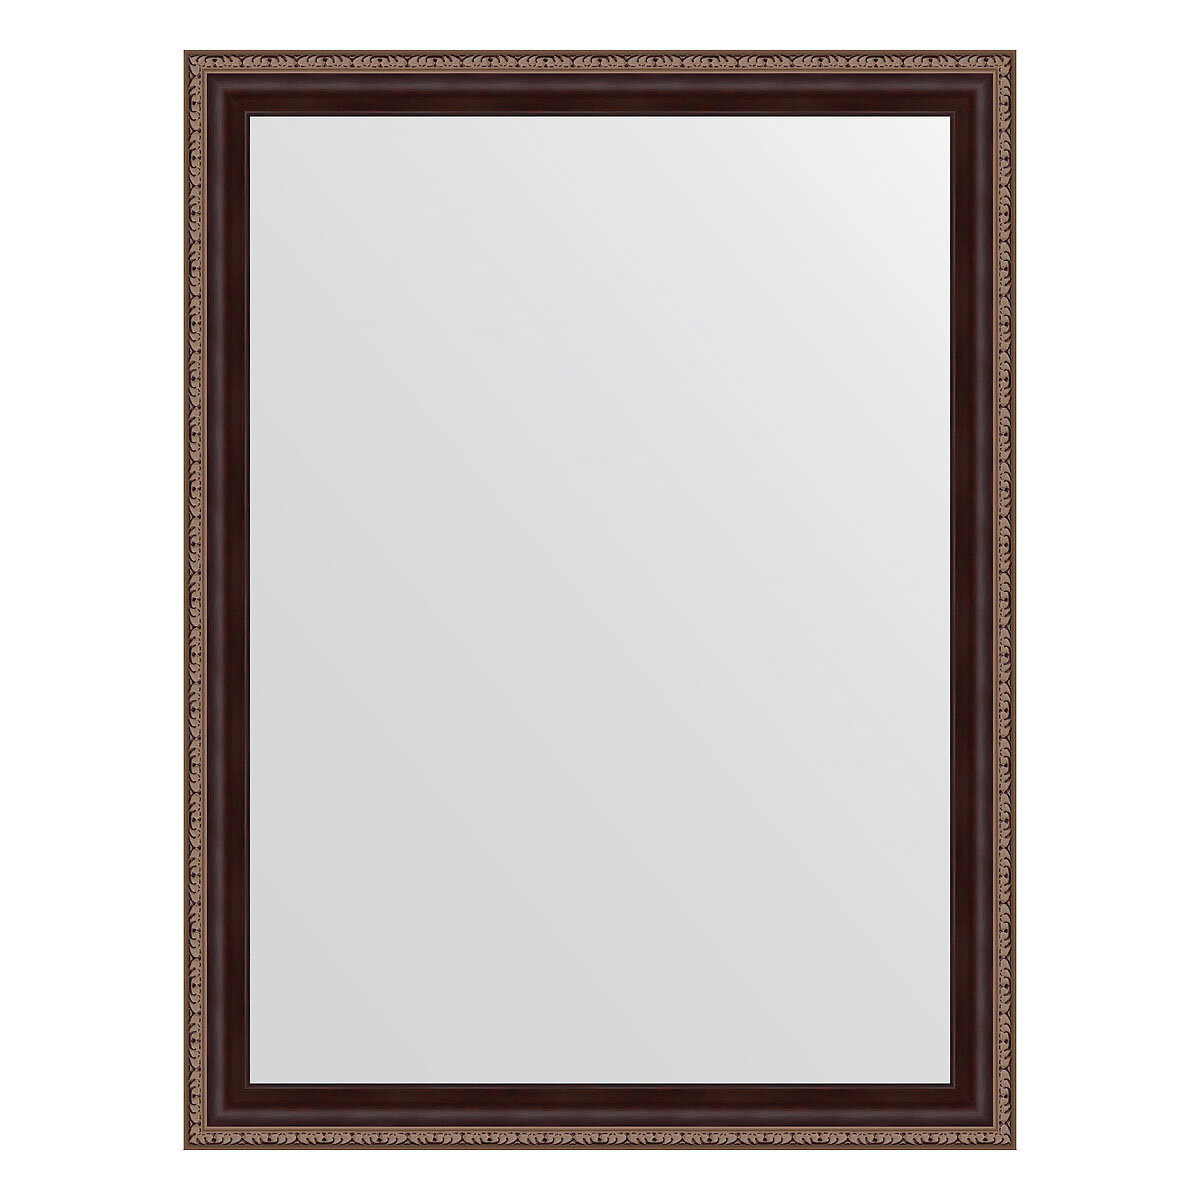 Зеркало настенное EVOFORM в багетной раме махагон с орнаментом, 63х83 см, для гостиной, прихожей, кабинета, спальни и ванной комнаты, BY 3644